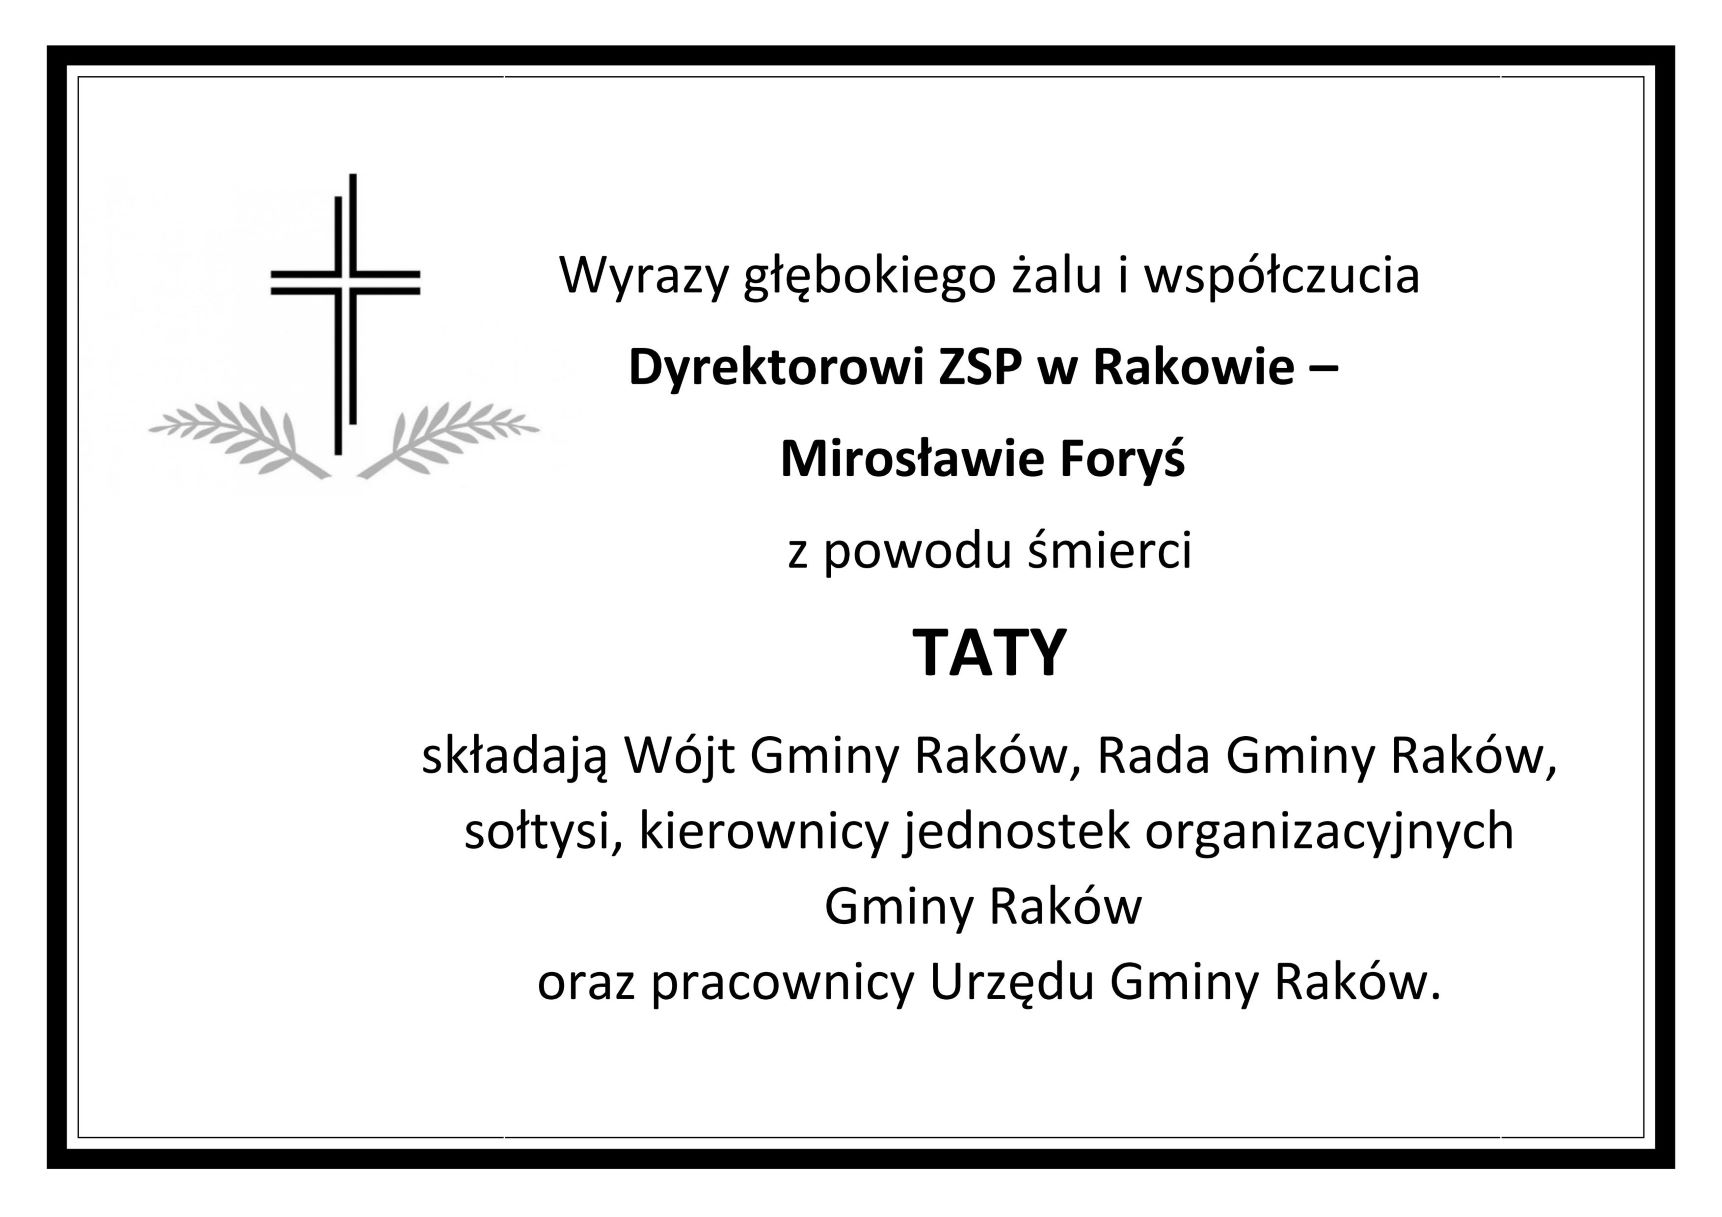 Kondolencje dla Dyrektora ZSP w Rakowie - Mirosławy Foryś